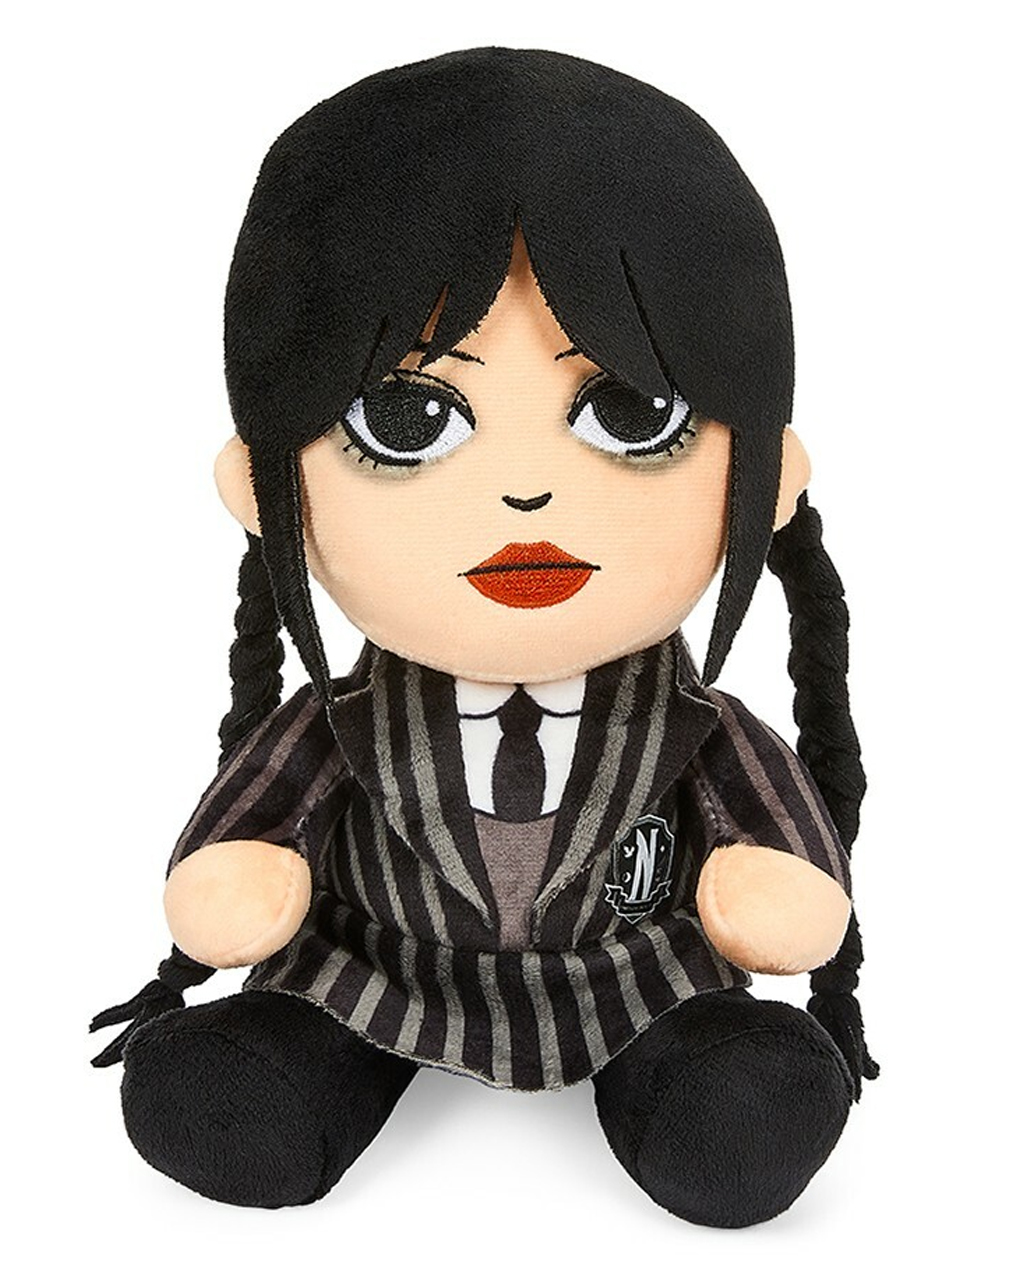 Wednesday Addams Plüschfigur 20cm als Geschenkidee von Horror-Shop.com